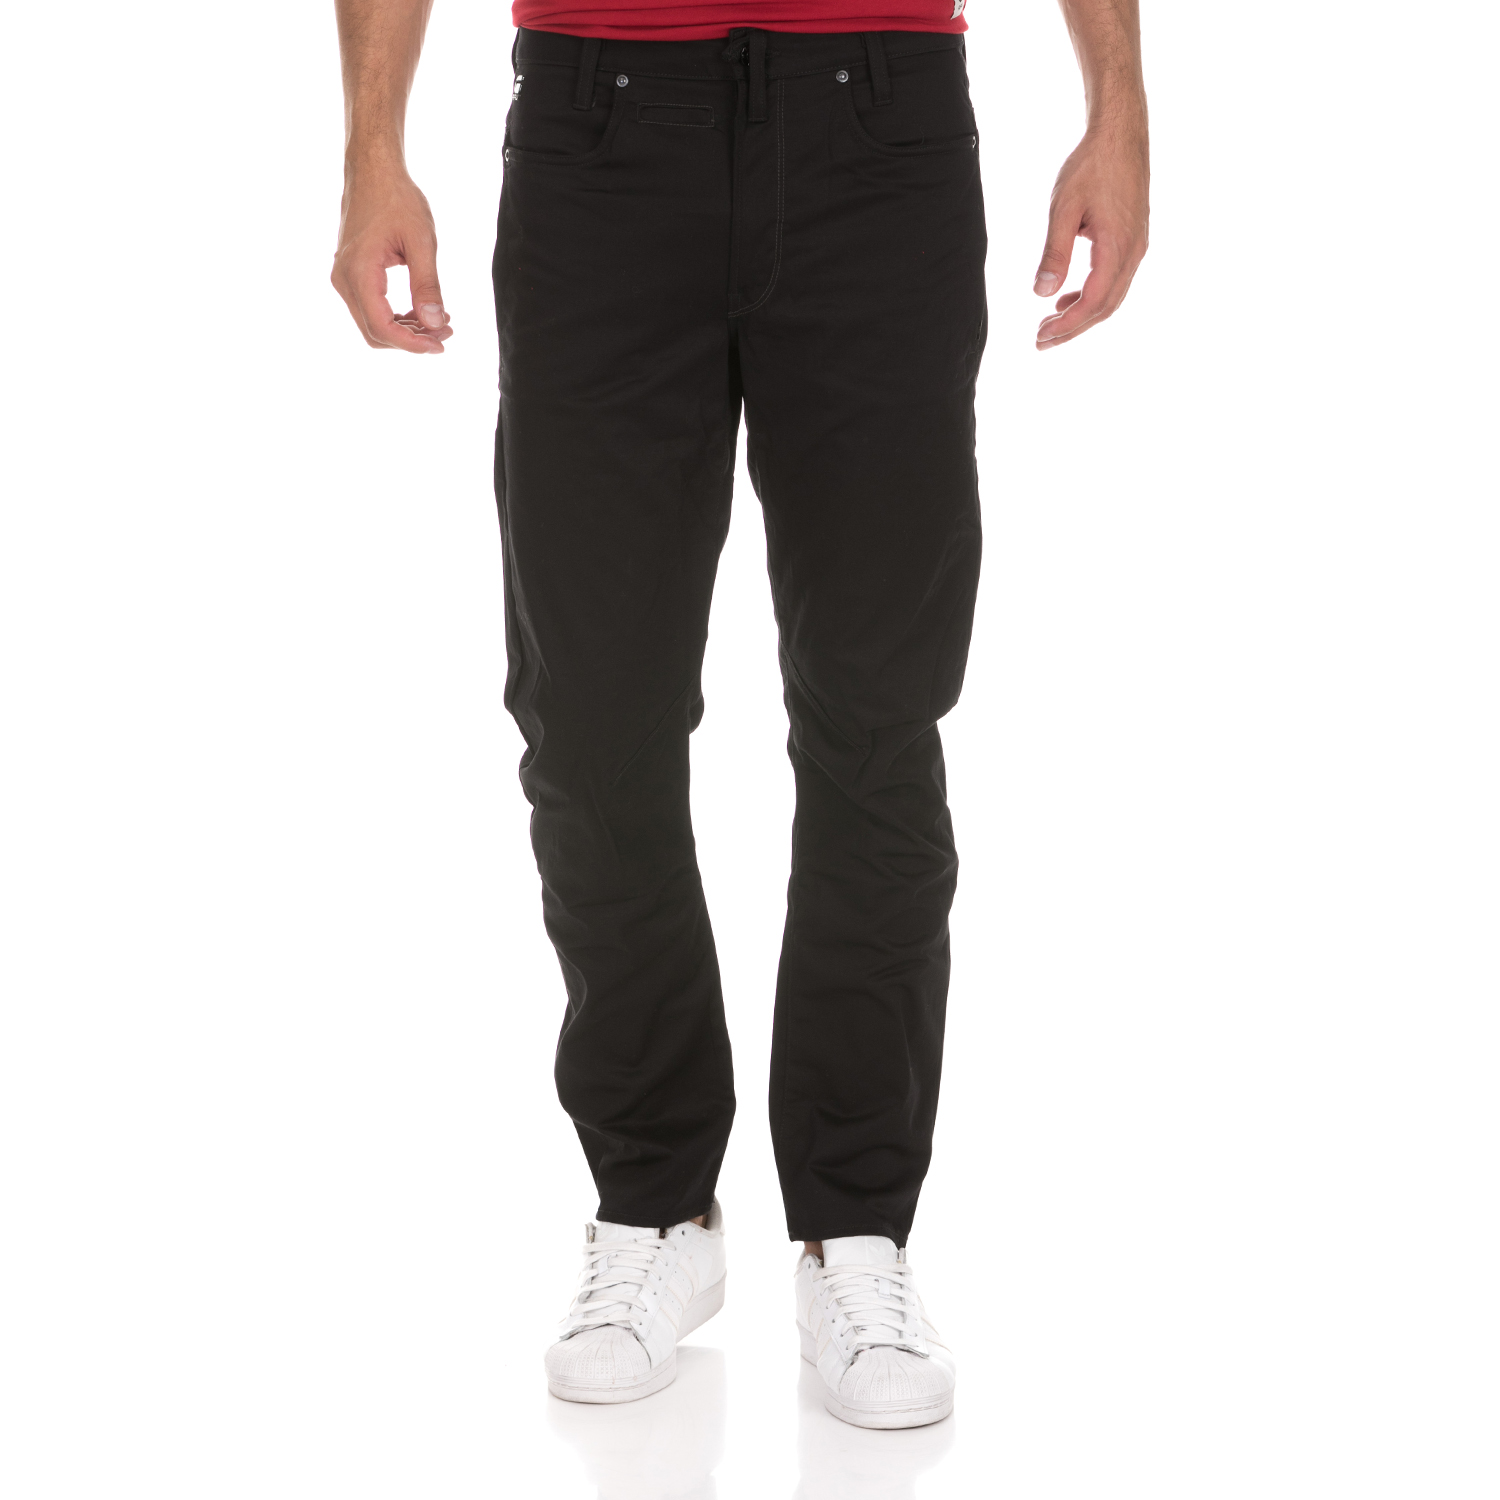 Ανδρικά/Ρούχα/Παντελόνια/Φαρδιά Γραμμή G-STAR RAW - Ανδρικό παντελόνι G-STAR RAW D-Staq 3D Tapered μαύρο